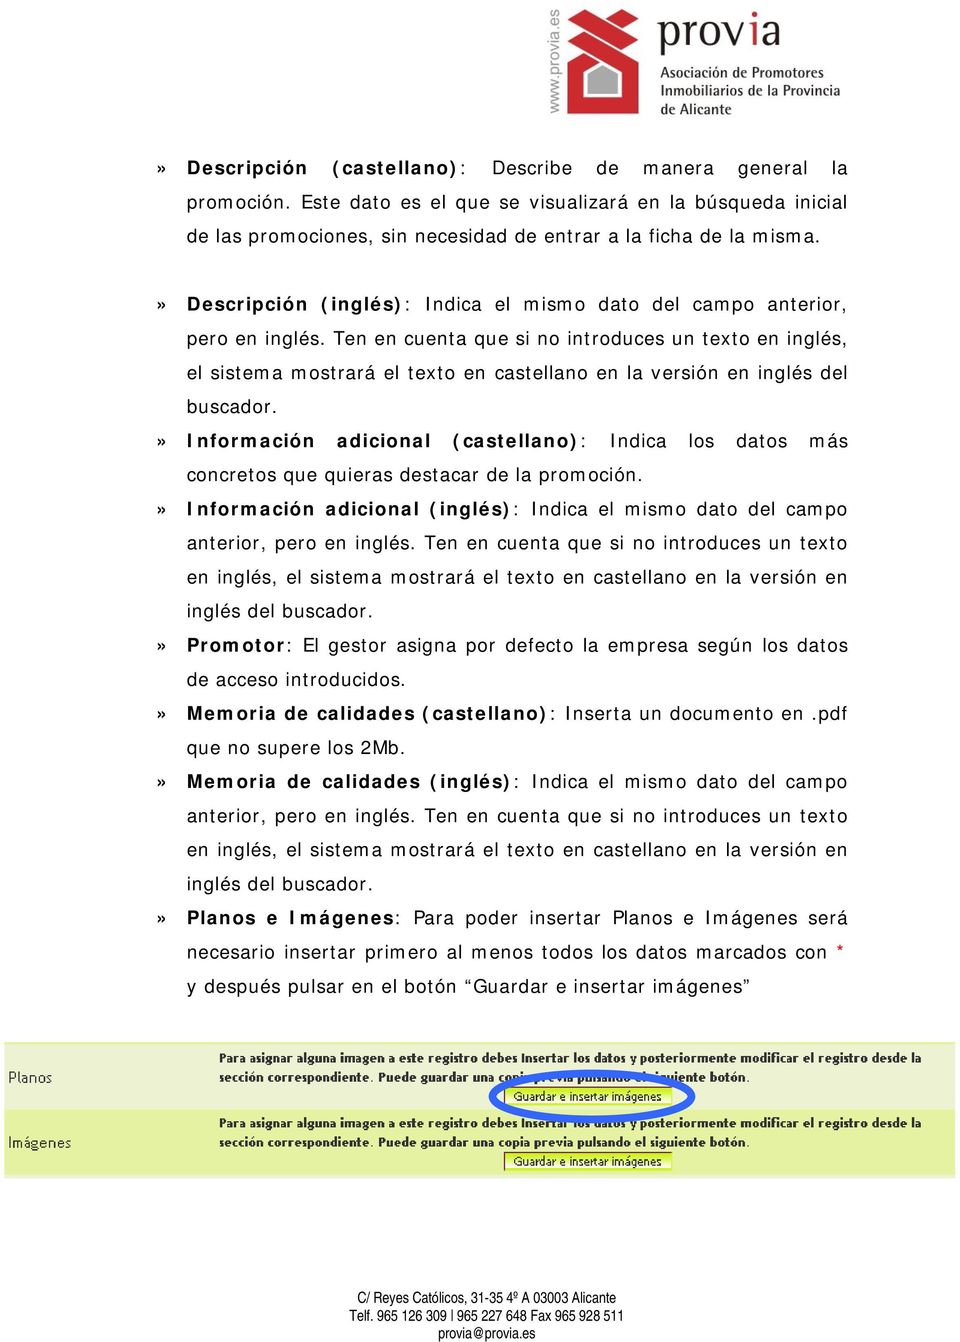 Ten en cuenta que si no introduces un texto en inglés, el sistema mostrará el texto en castellano en la versión en inglés del buscador.